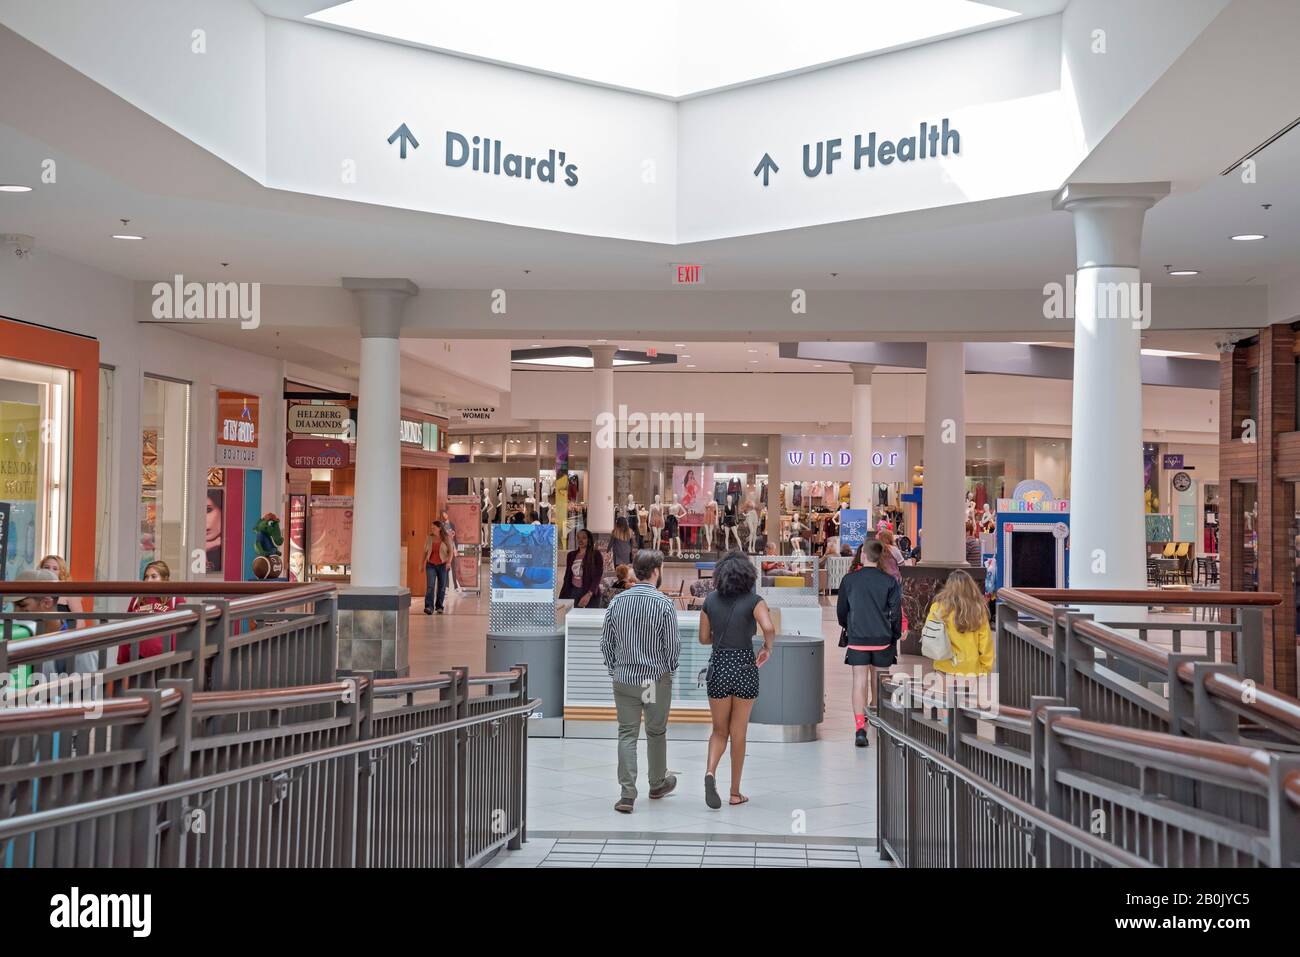 Le centre de santé de l'Université de Floride a récemment ouvert ses portes dans le centre commercial Oaks Mall de Gainesville, en Floride. Banque D'Images